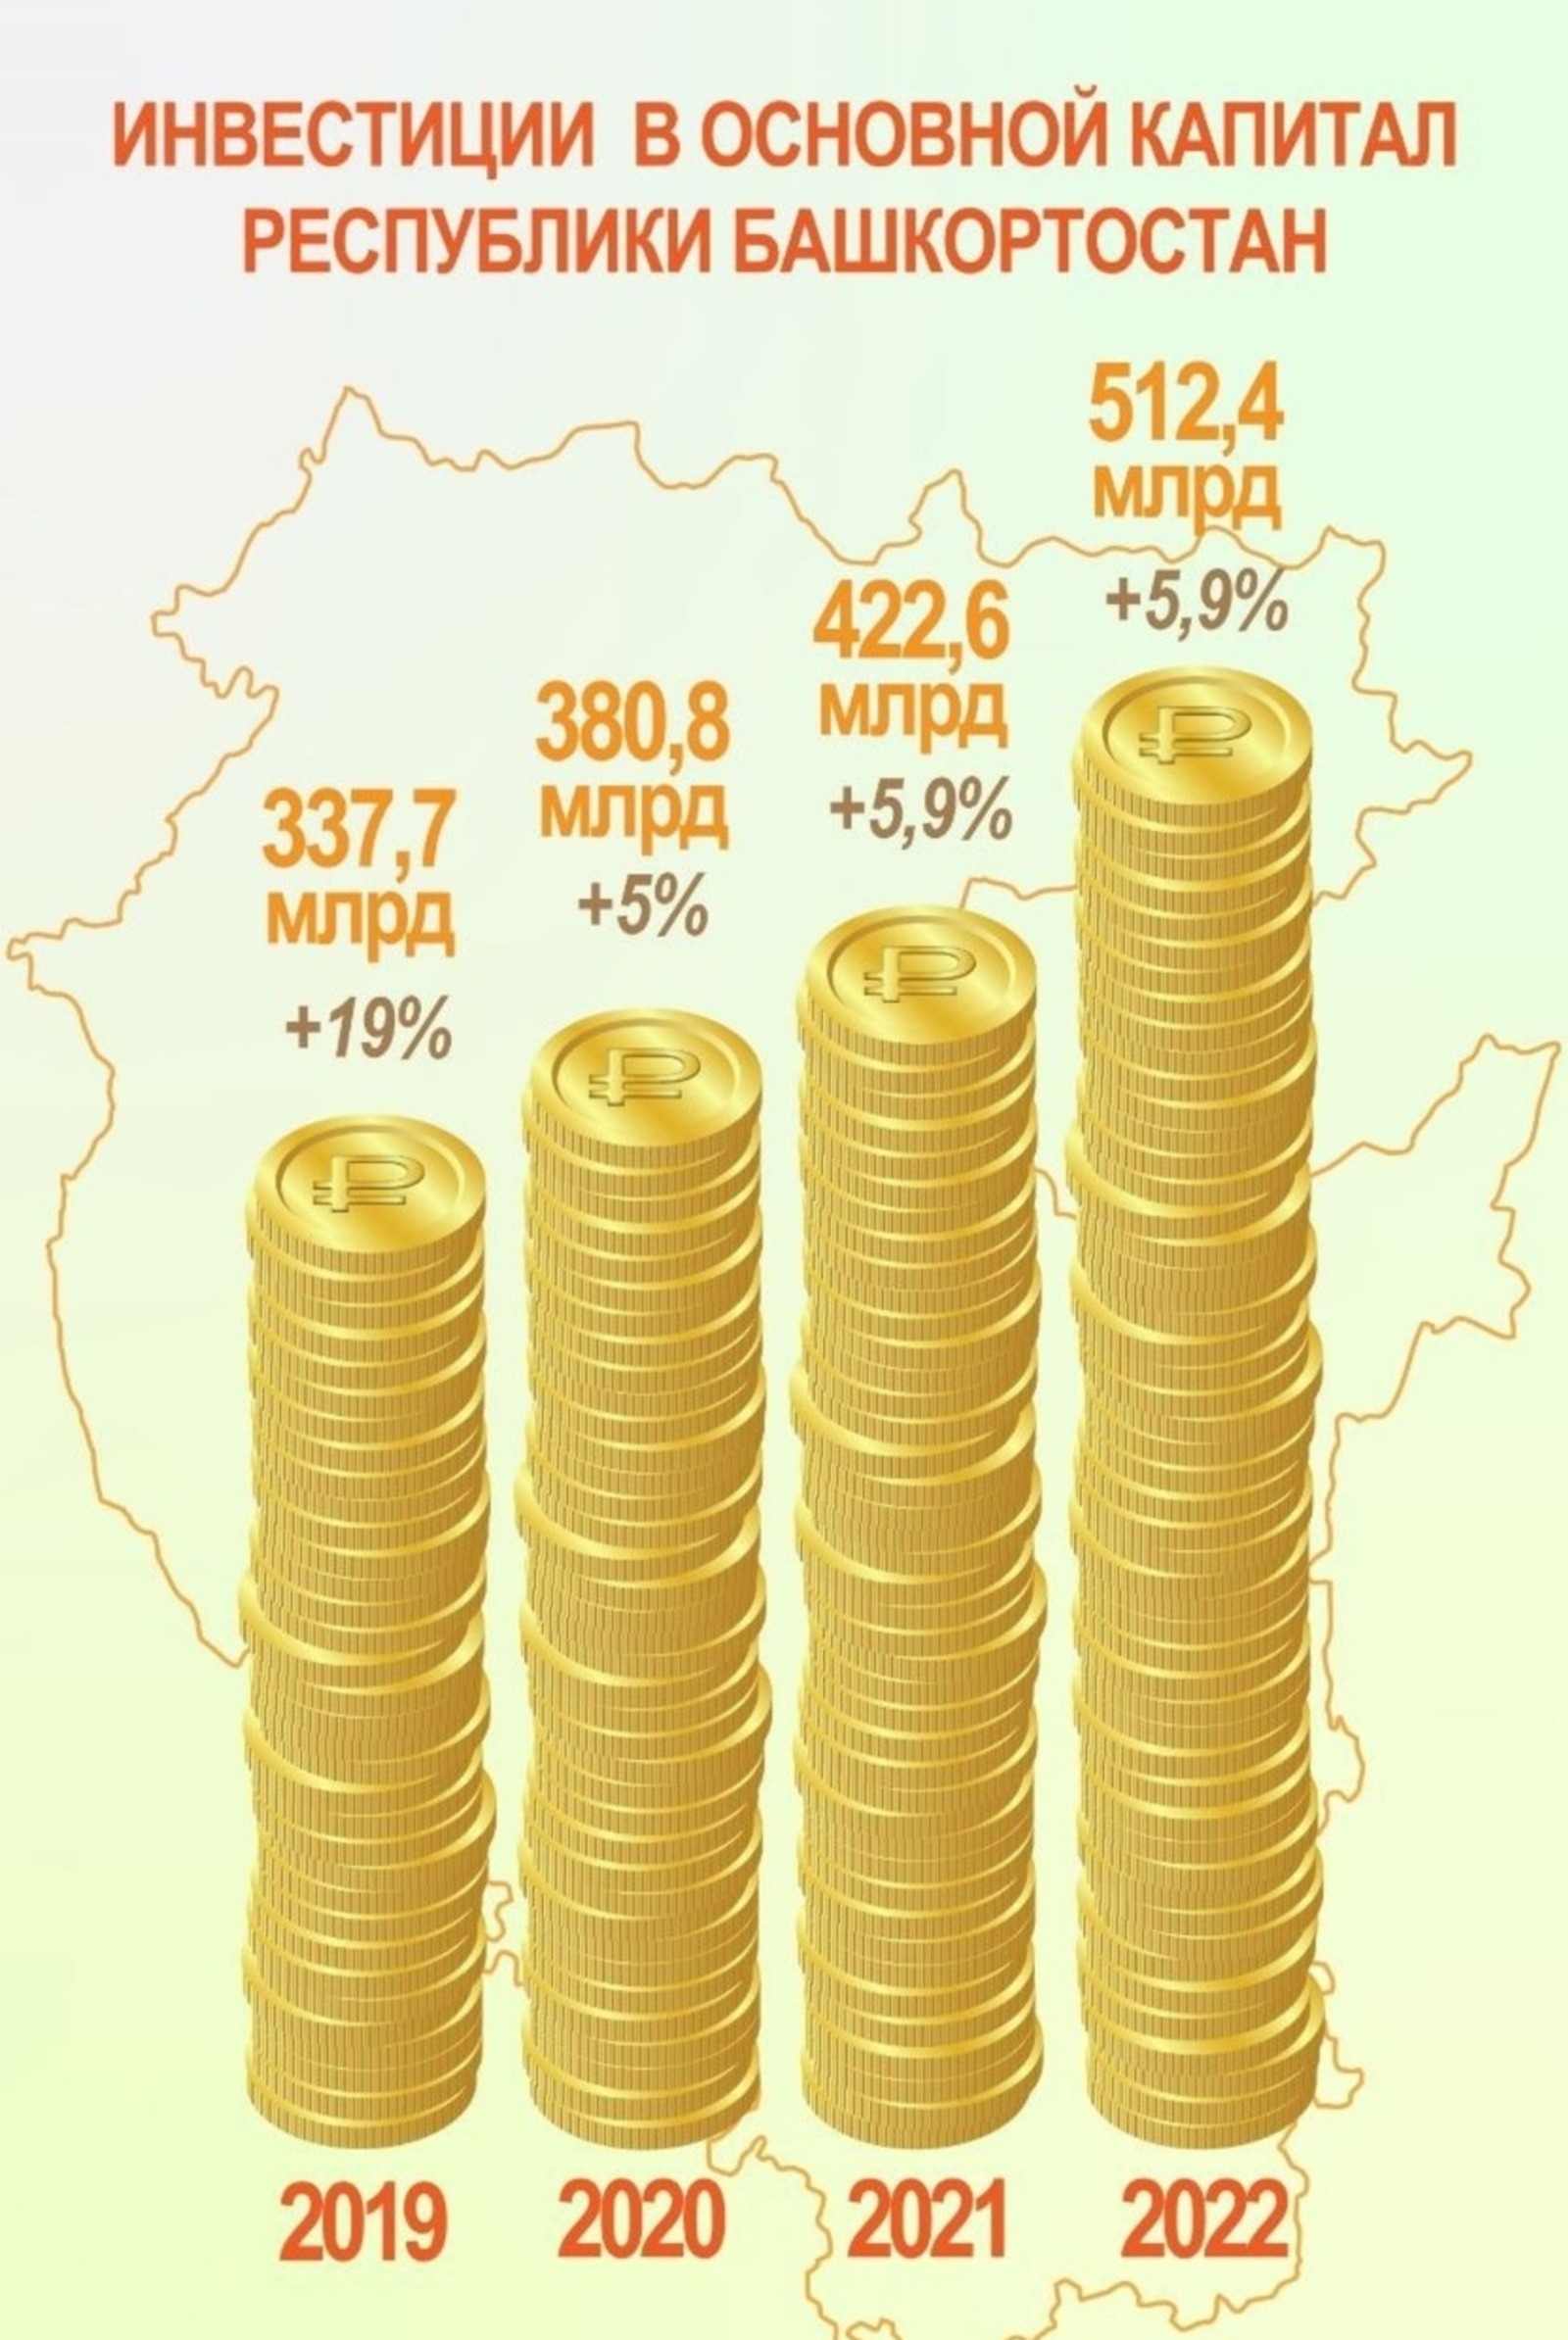 Эксперты прокомментировали рекордные инвестиции в экономику Бaшкортостана